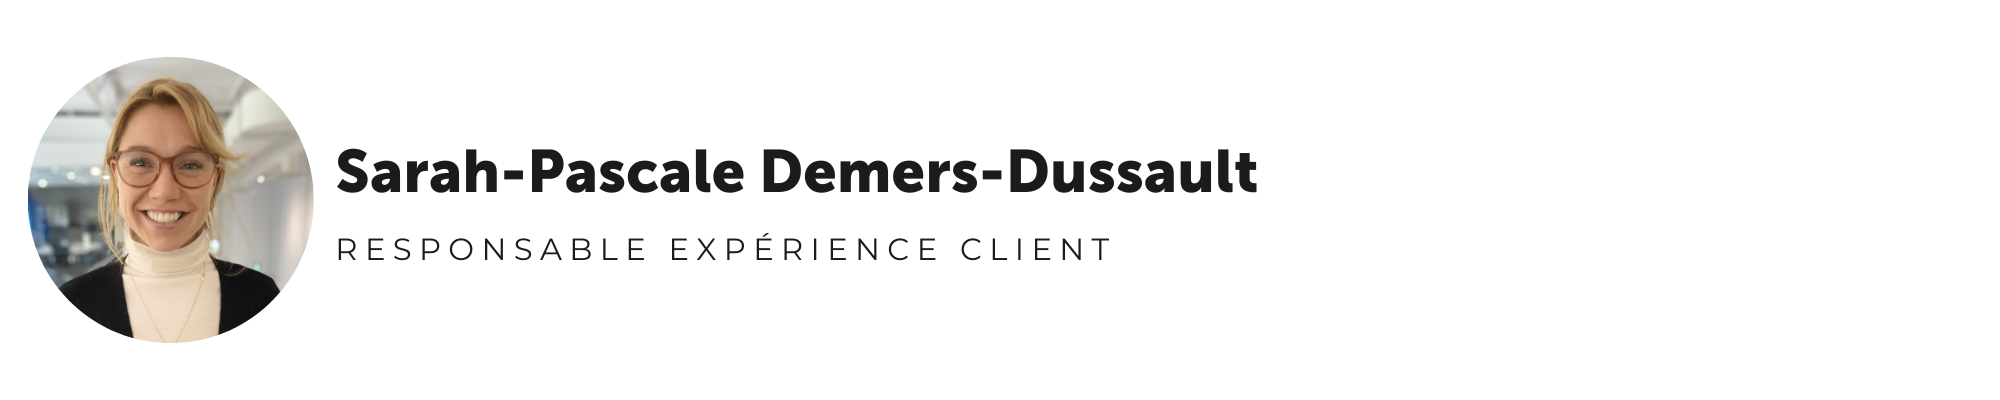 Sarah-Pascale Demers-Dussault, responsable expérience client chez Nexapp